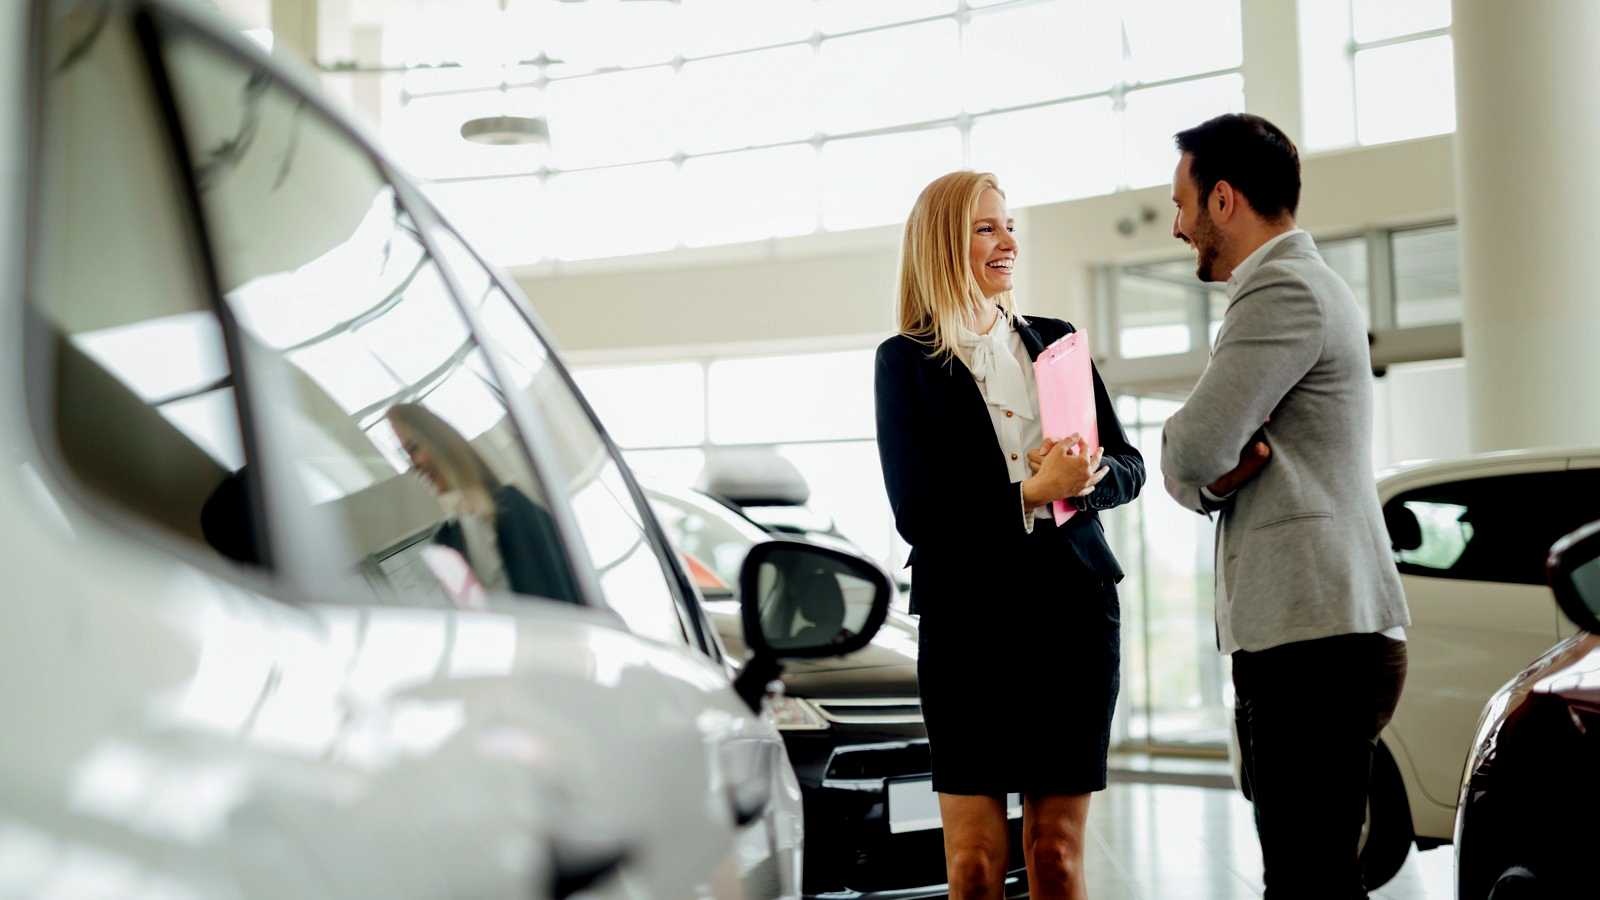 Покупка автомобиля в автосалоне гарантирует ли честную сделку?